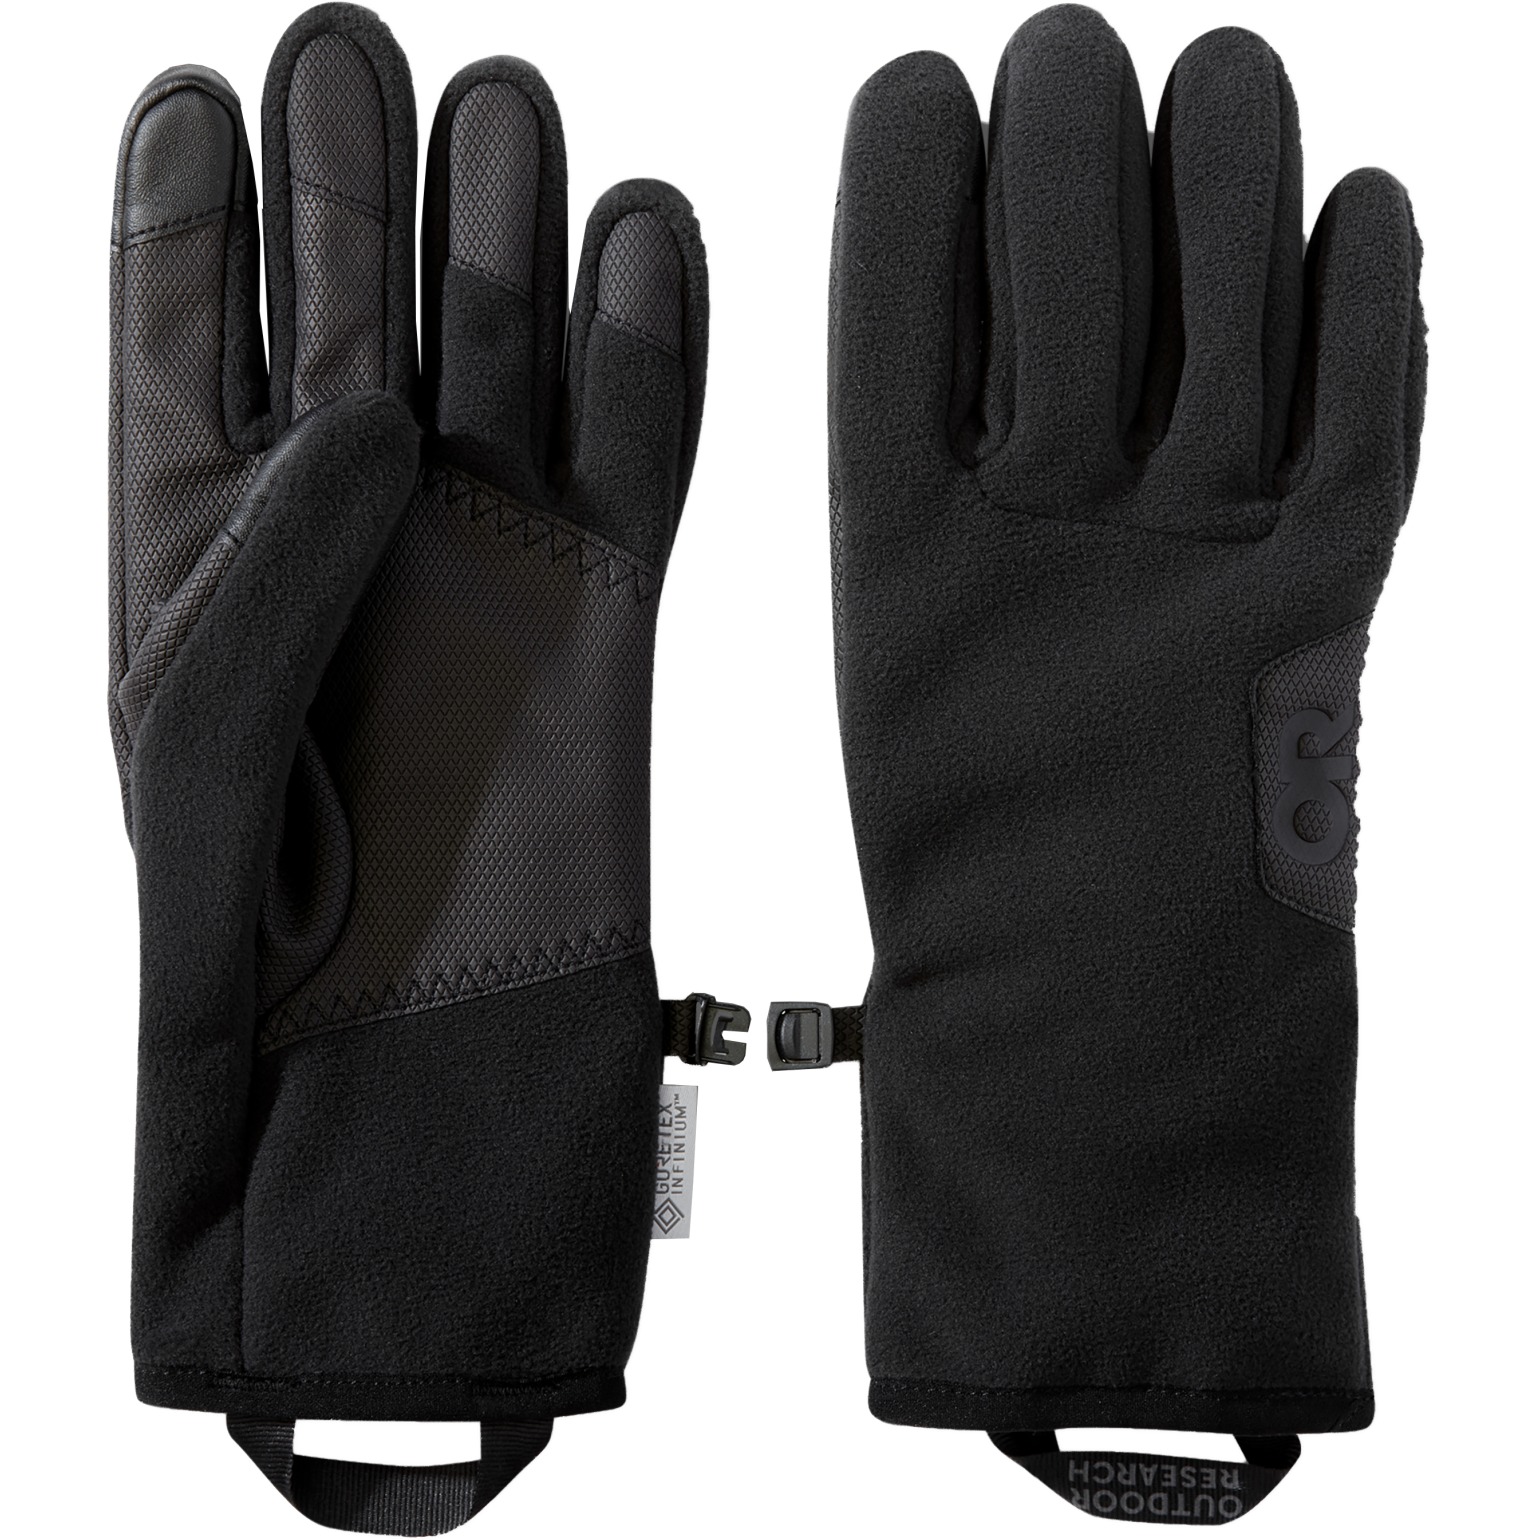 Productfoto van Outdoor Research Gripper Sensor Handschoenen - zwart